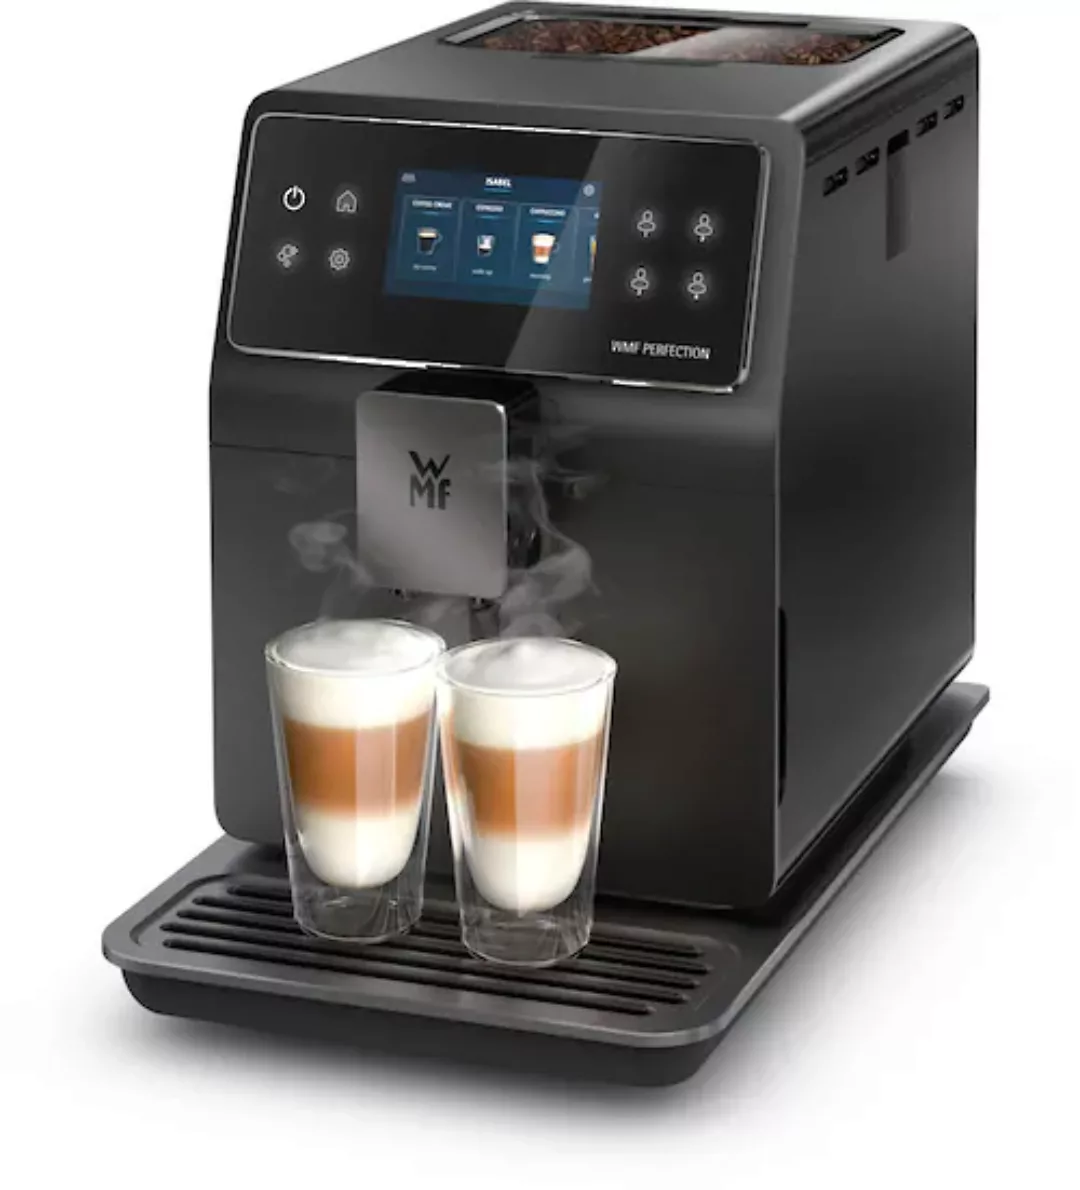 WMF Kaffeevollautomat »Perfection 740 CP820810« günstig online kaufen